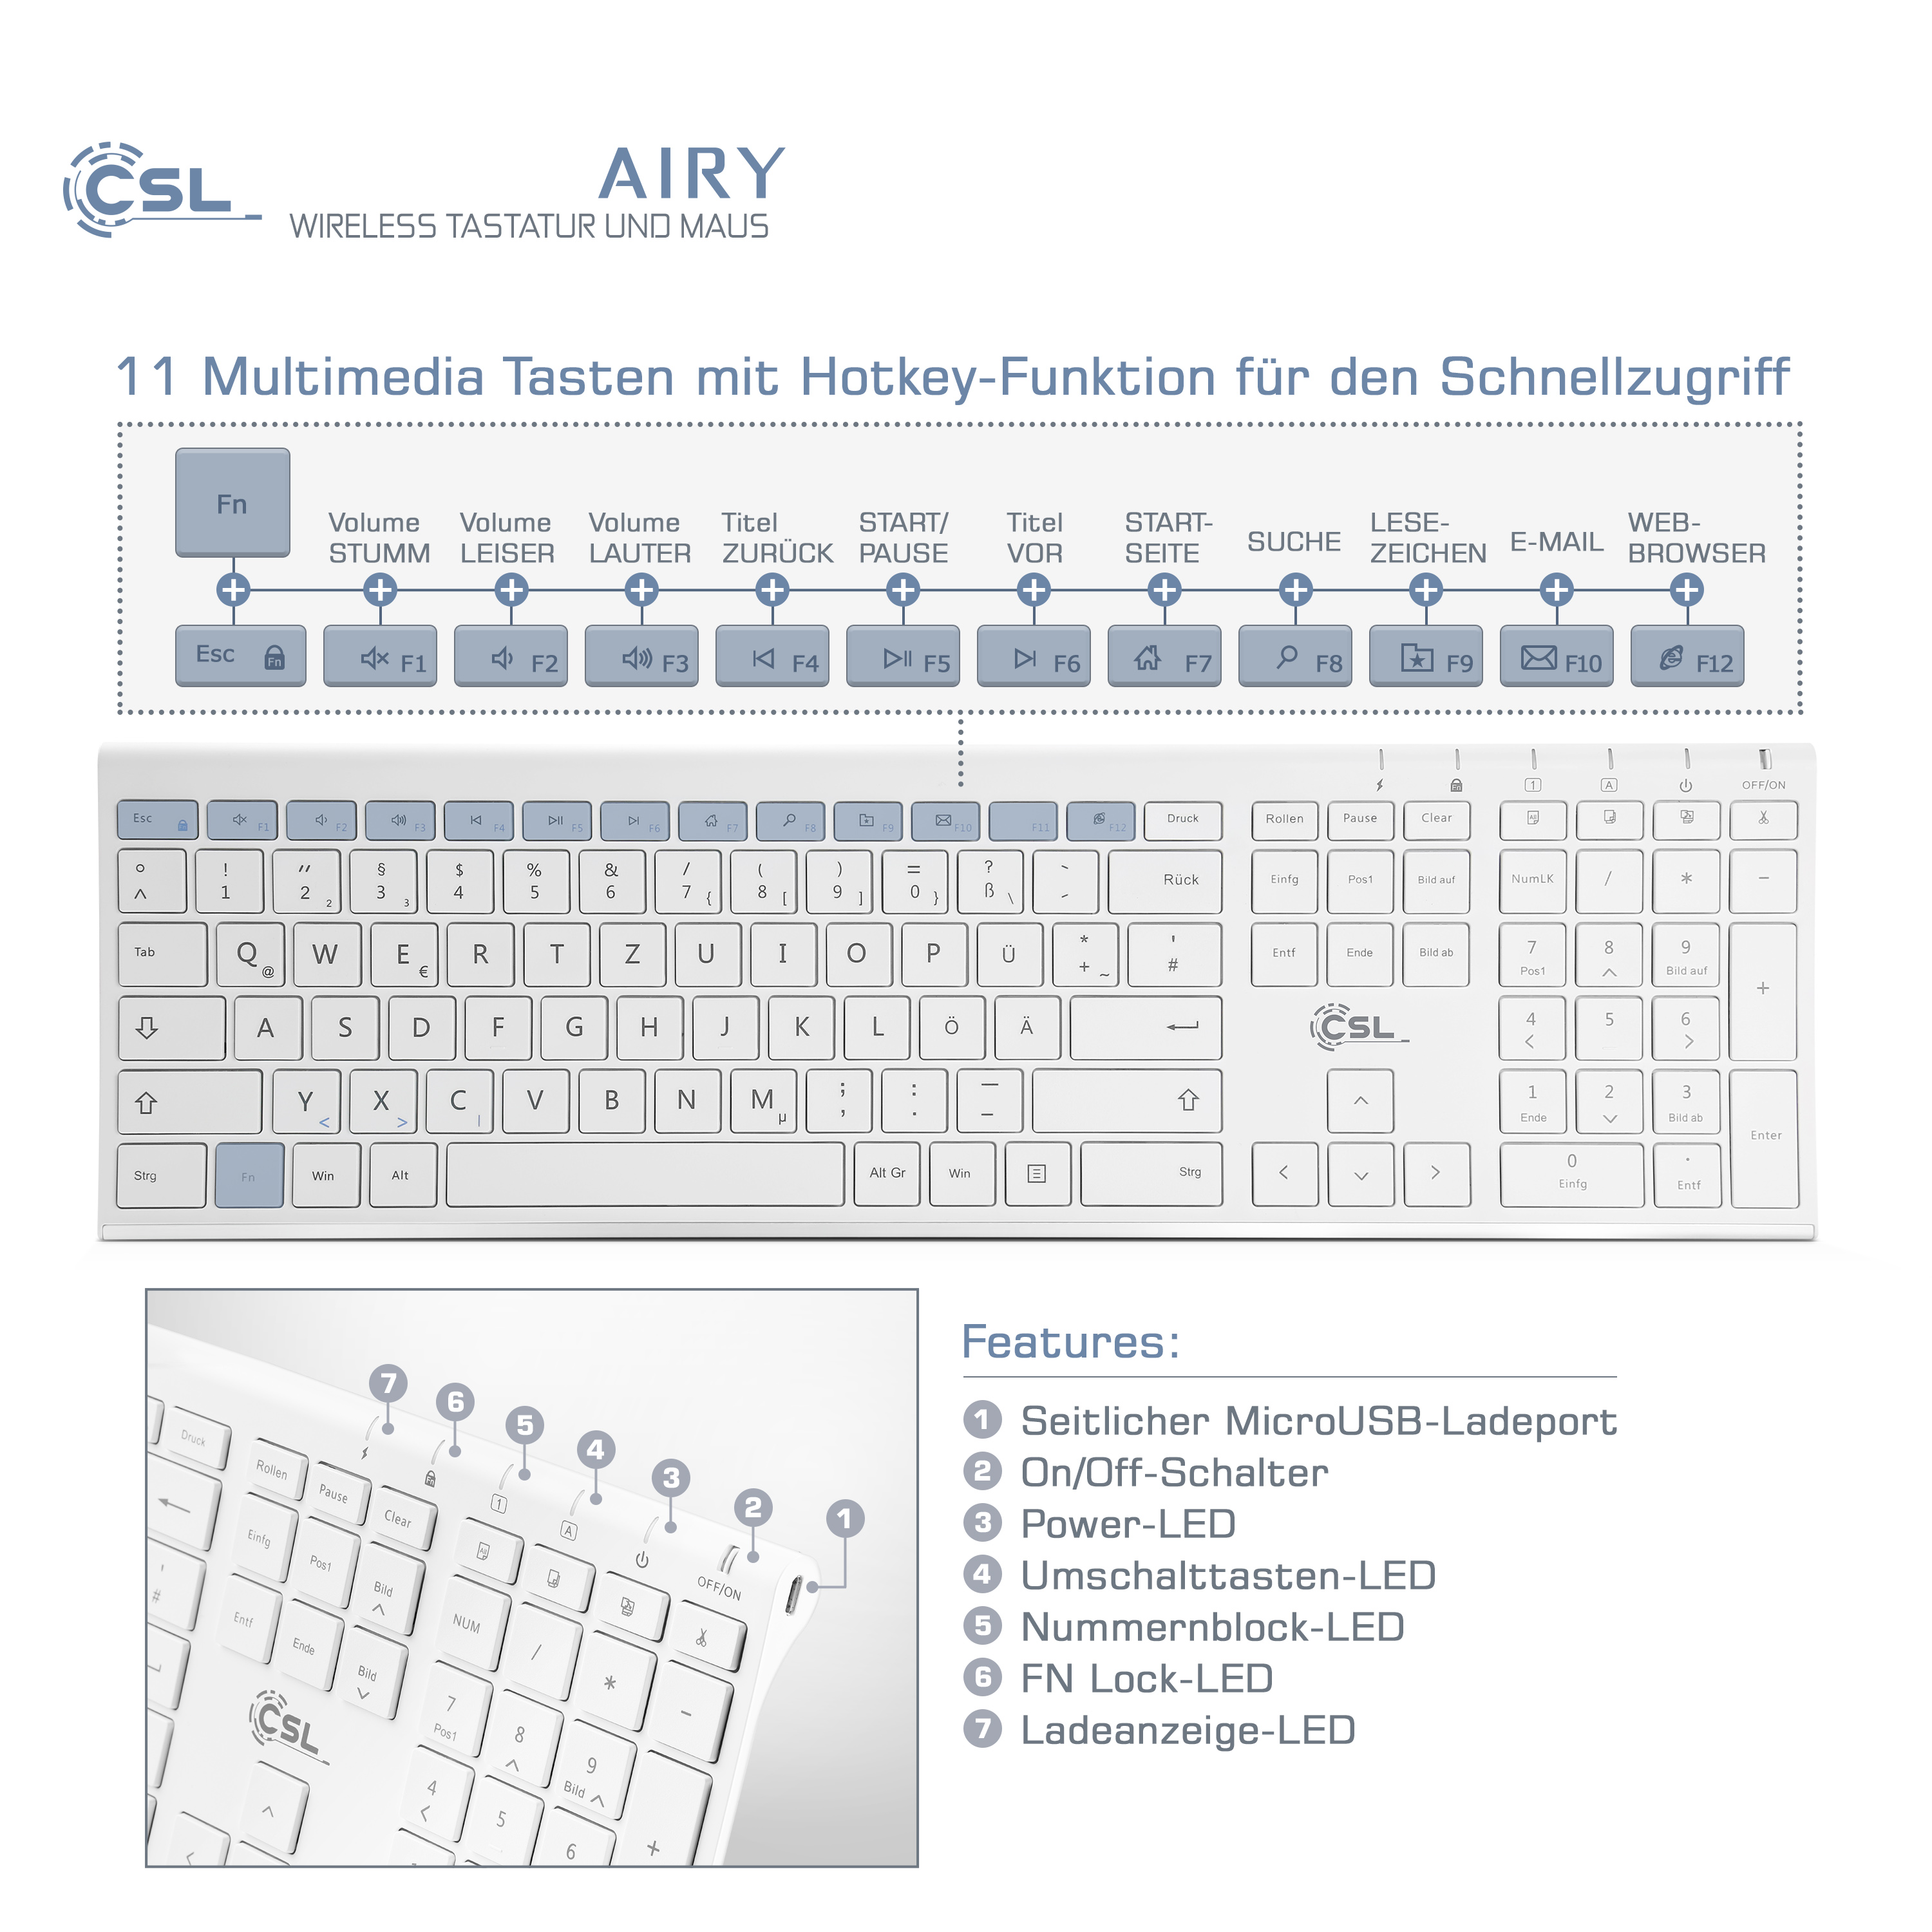 CSL AIRY wireless weiß, Maus, Tastatur-/Maus-Set, und weiß Tastatur